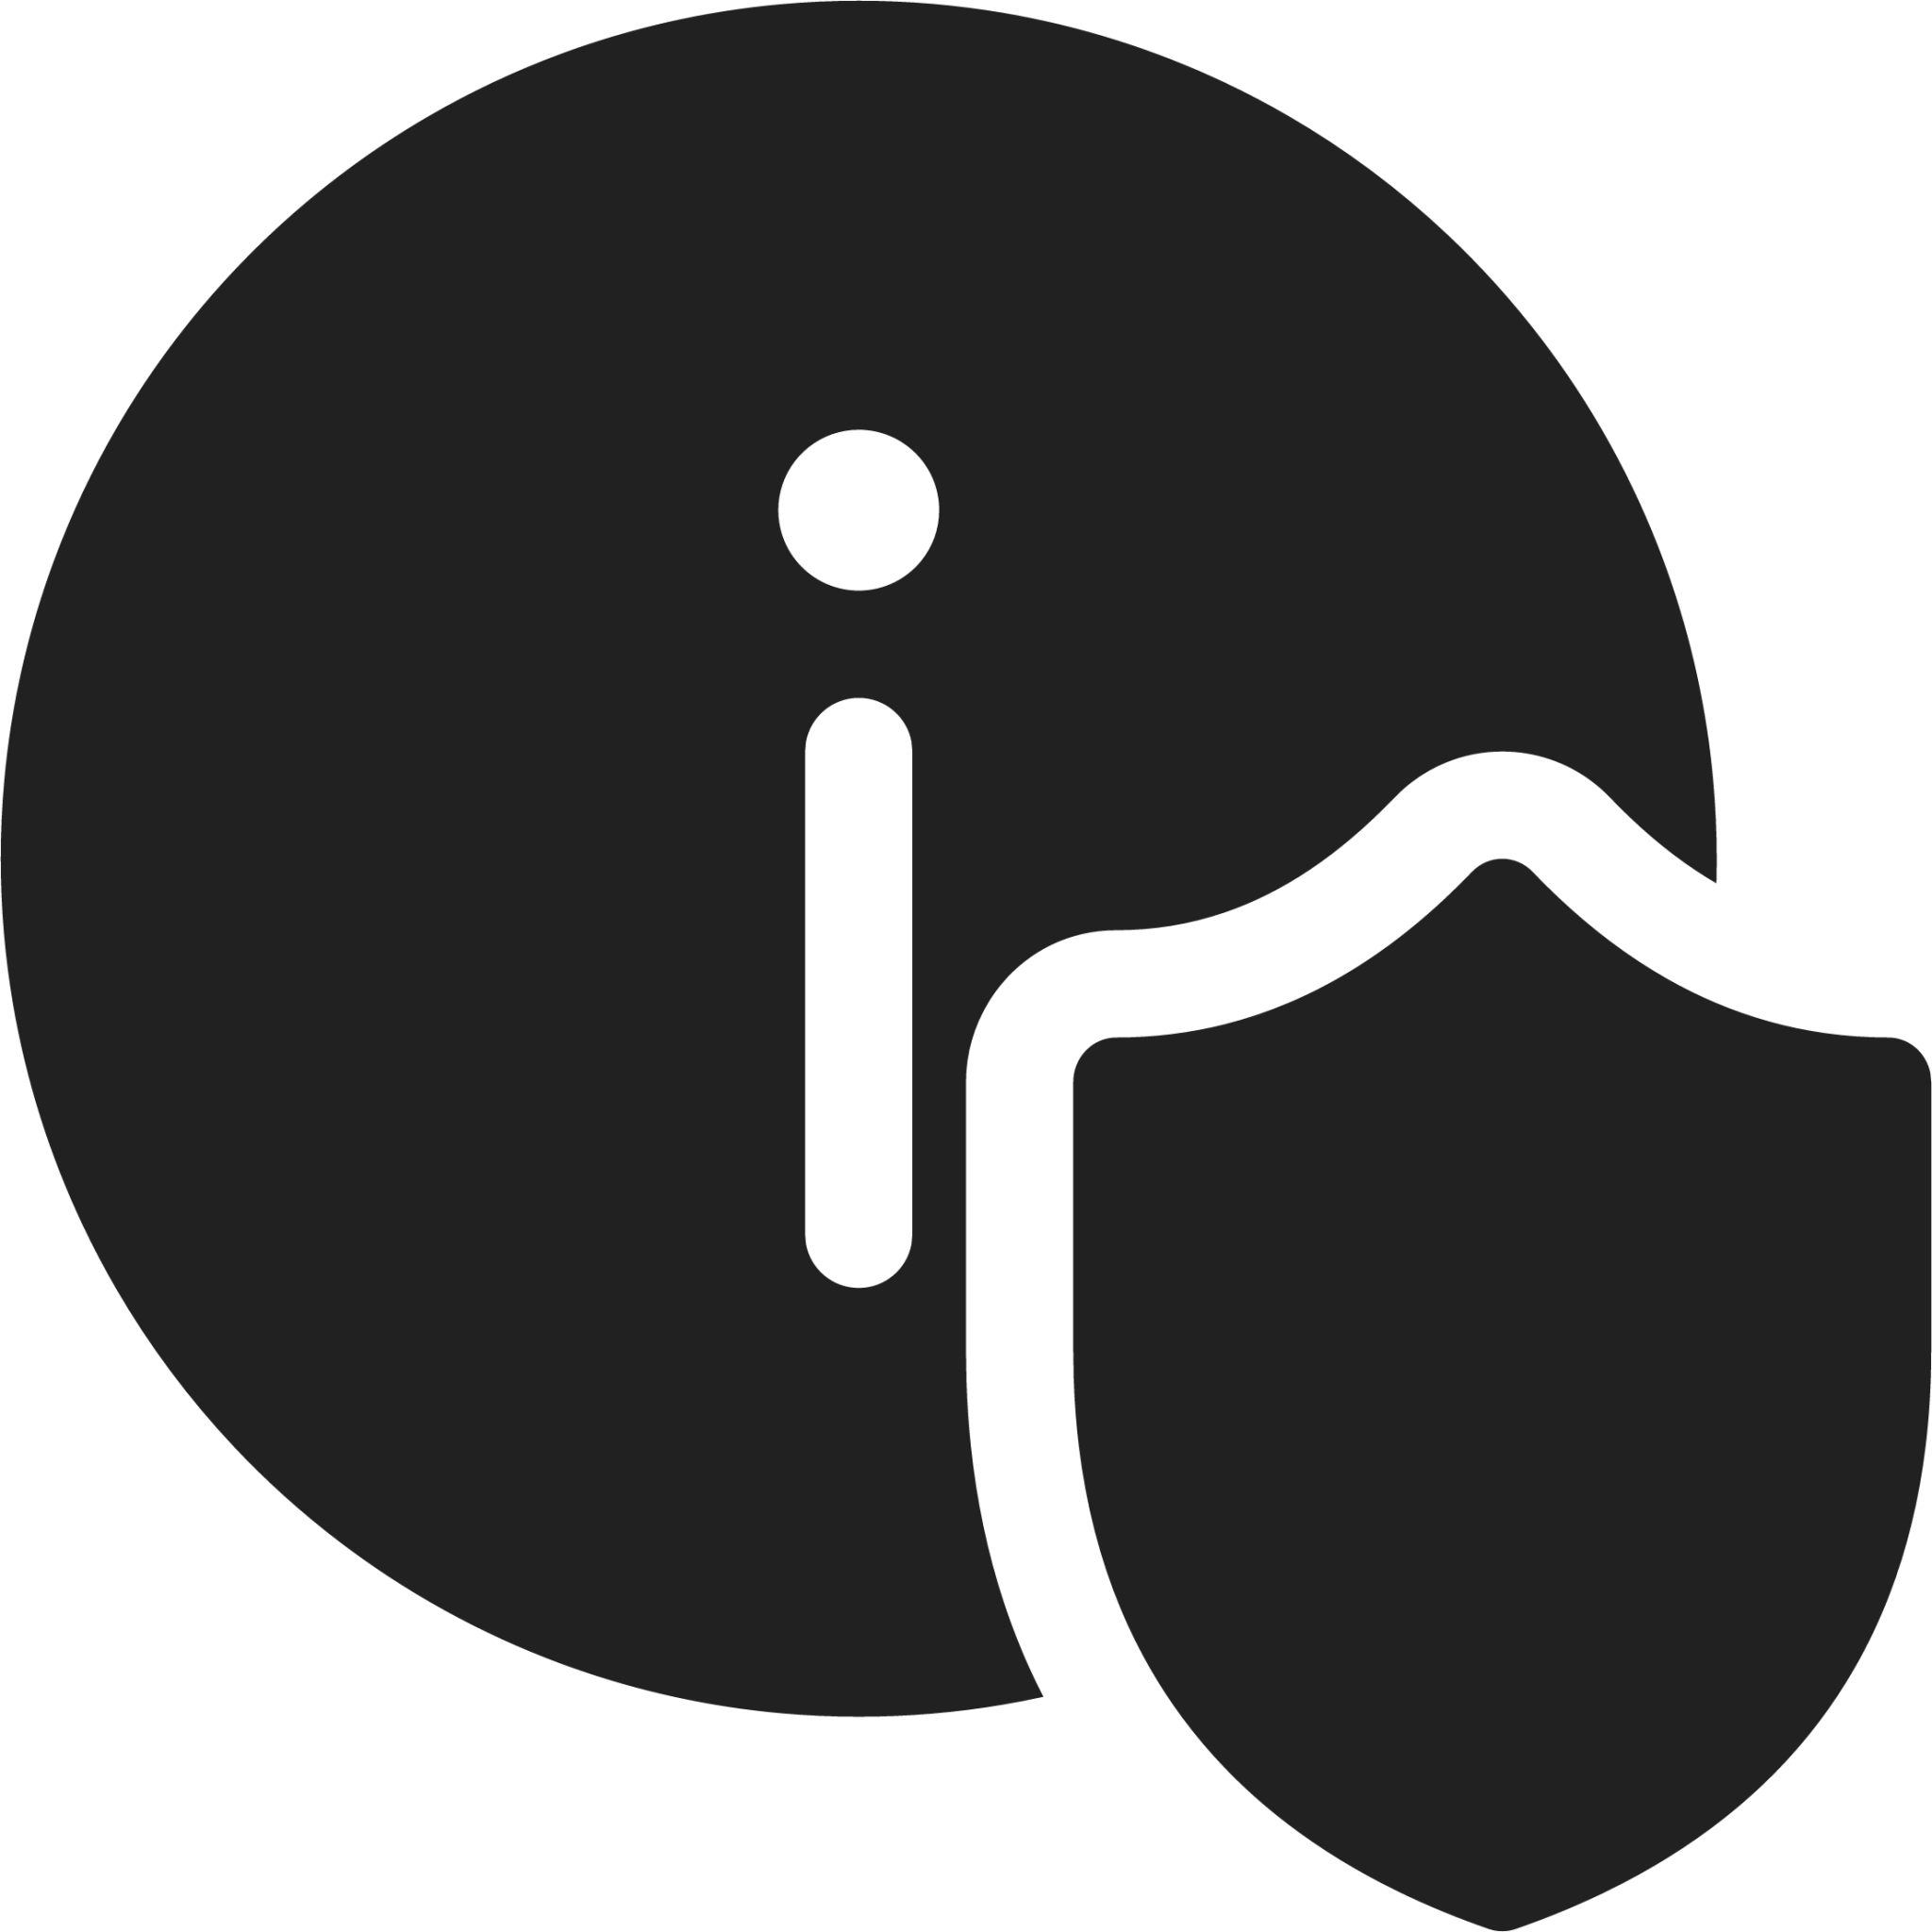 Info Shield icon